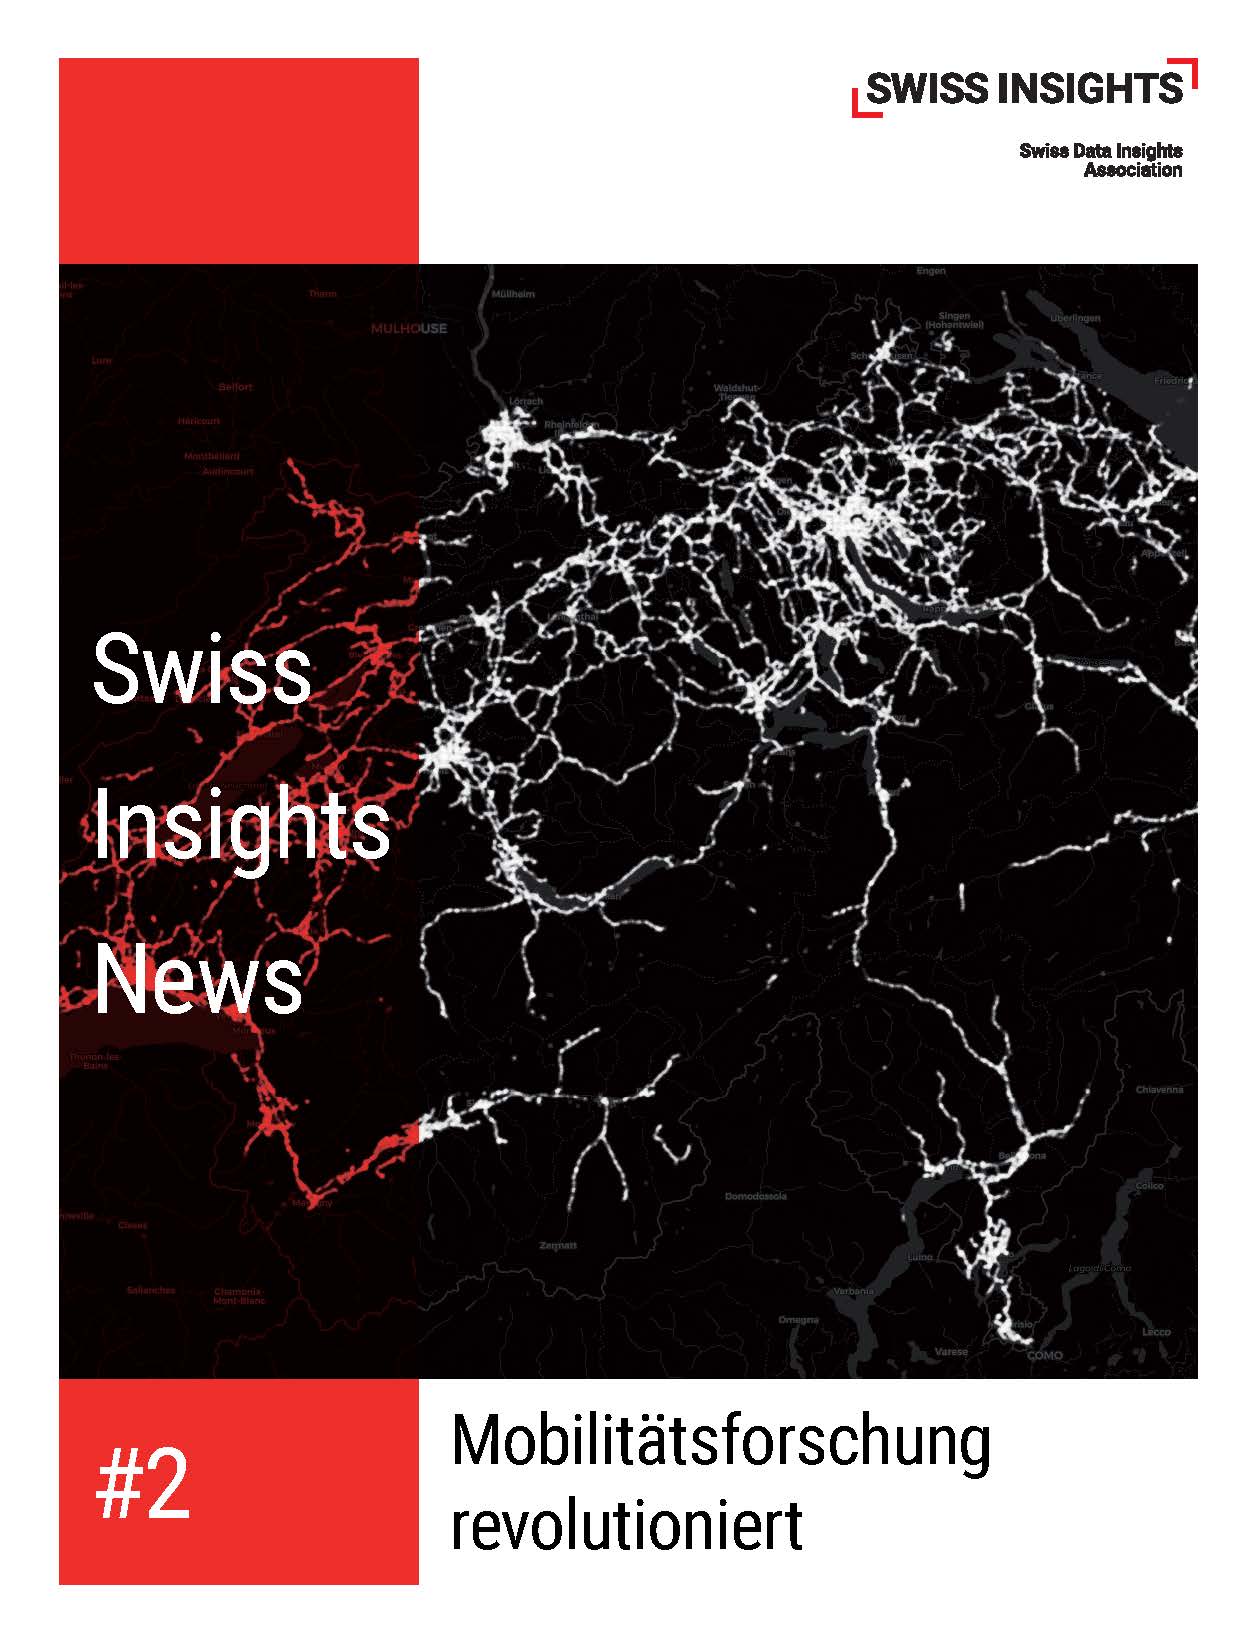 Mobilitätsforschung durch smartes Tracking revolutioniert